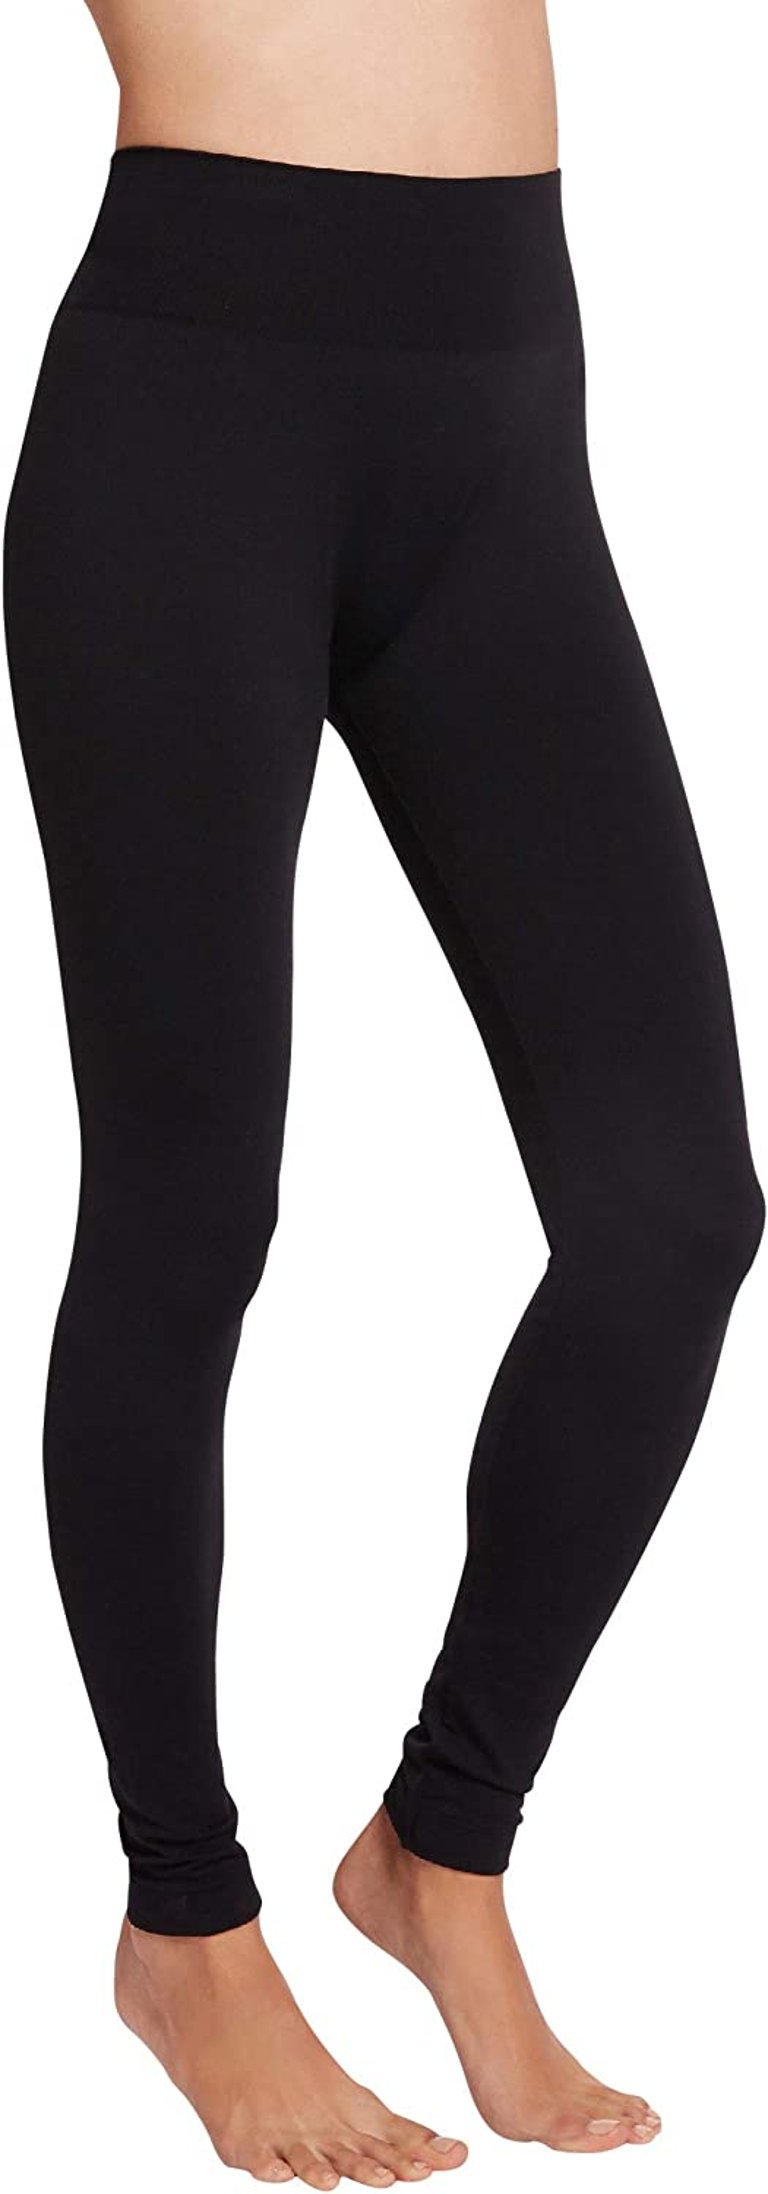 Women's Slim Fit Soft Knitted Waistband Leggings Black - Black